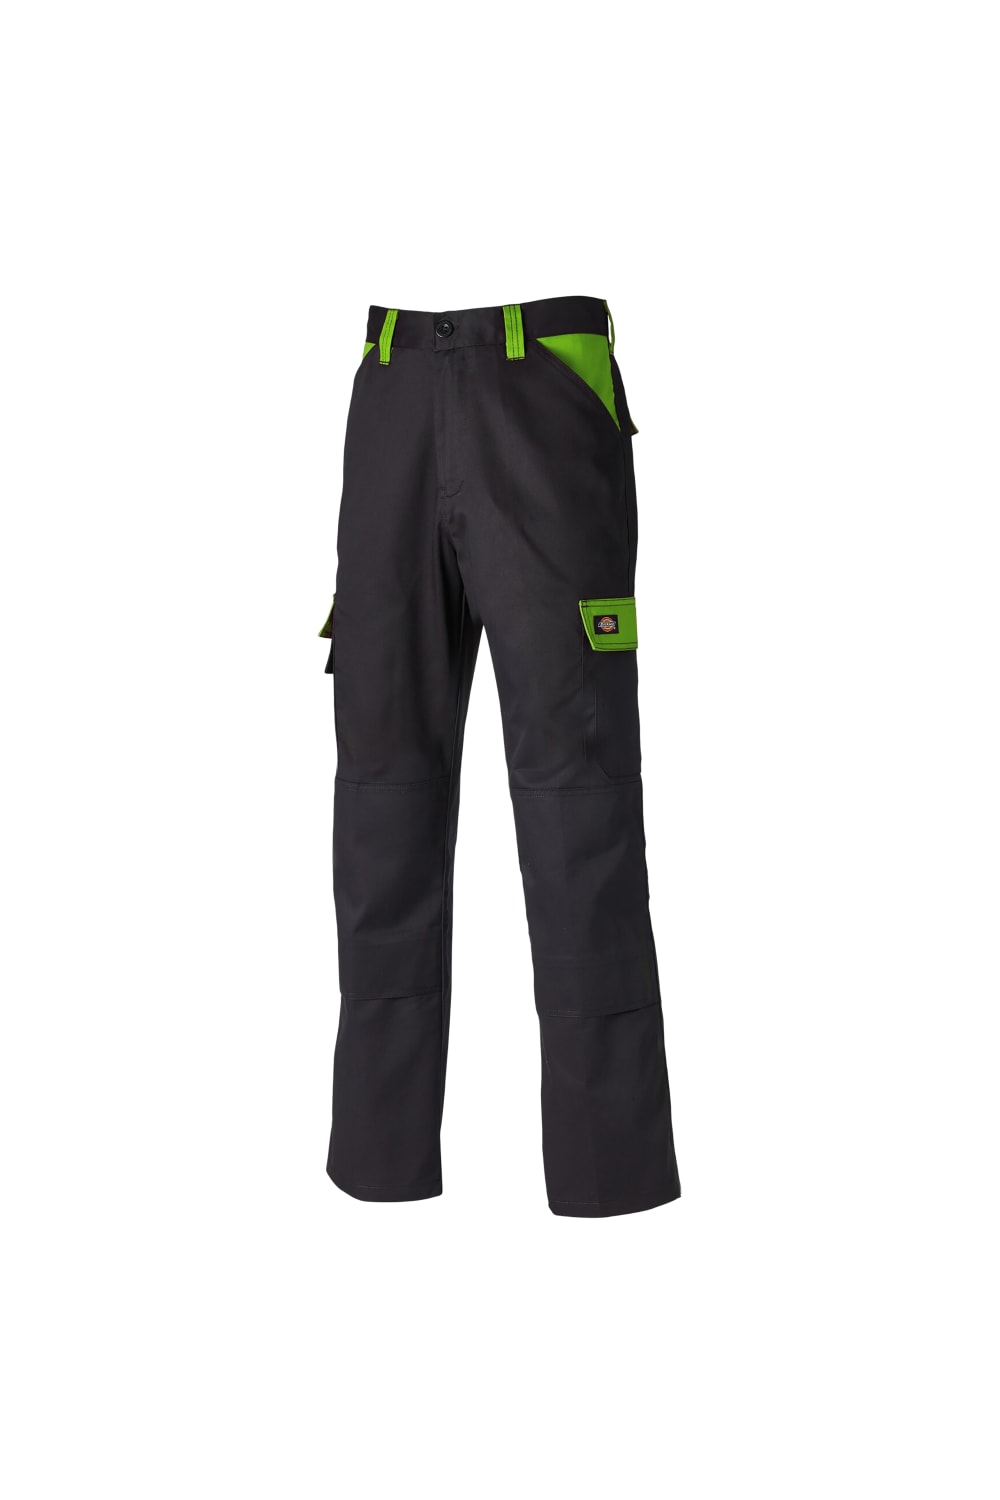 Dickies Mens Everyday Durable Cargo Pocket Work Pants (Black/Lime)